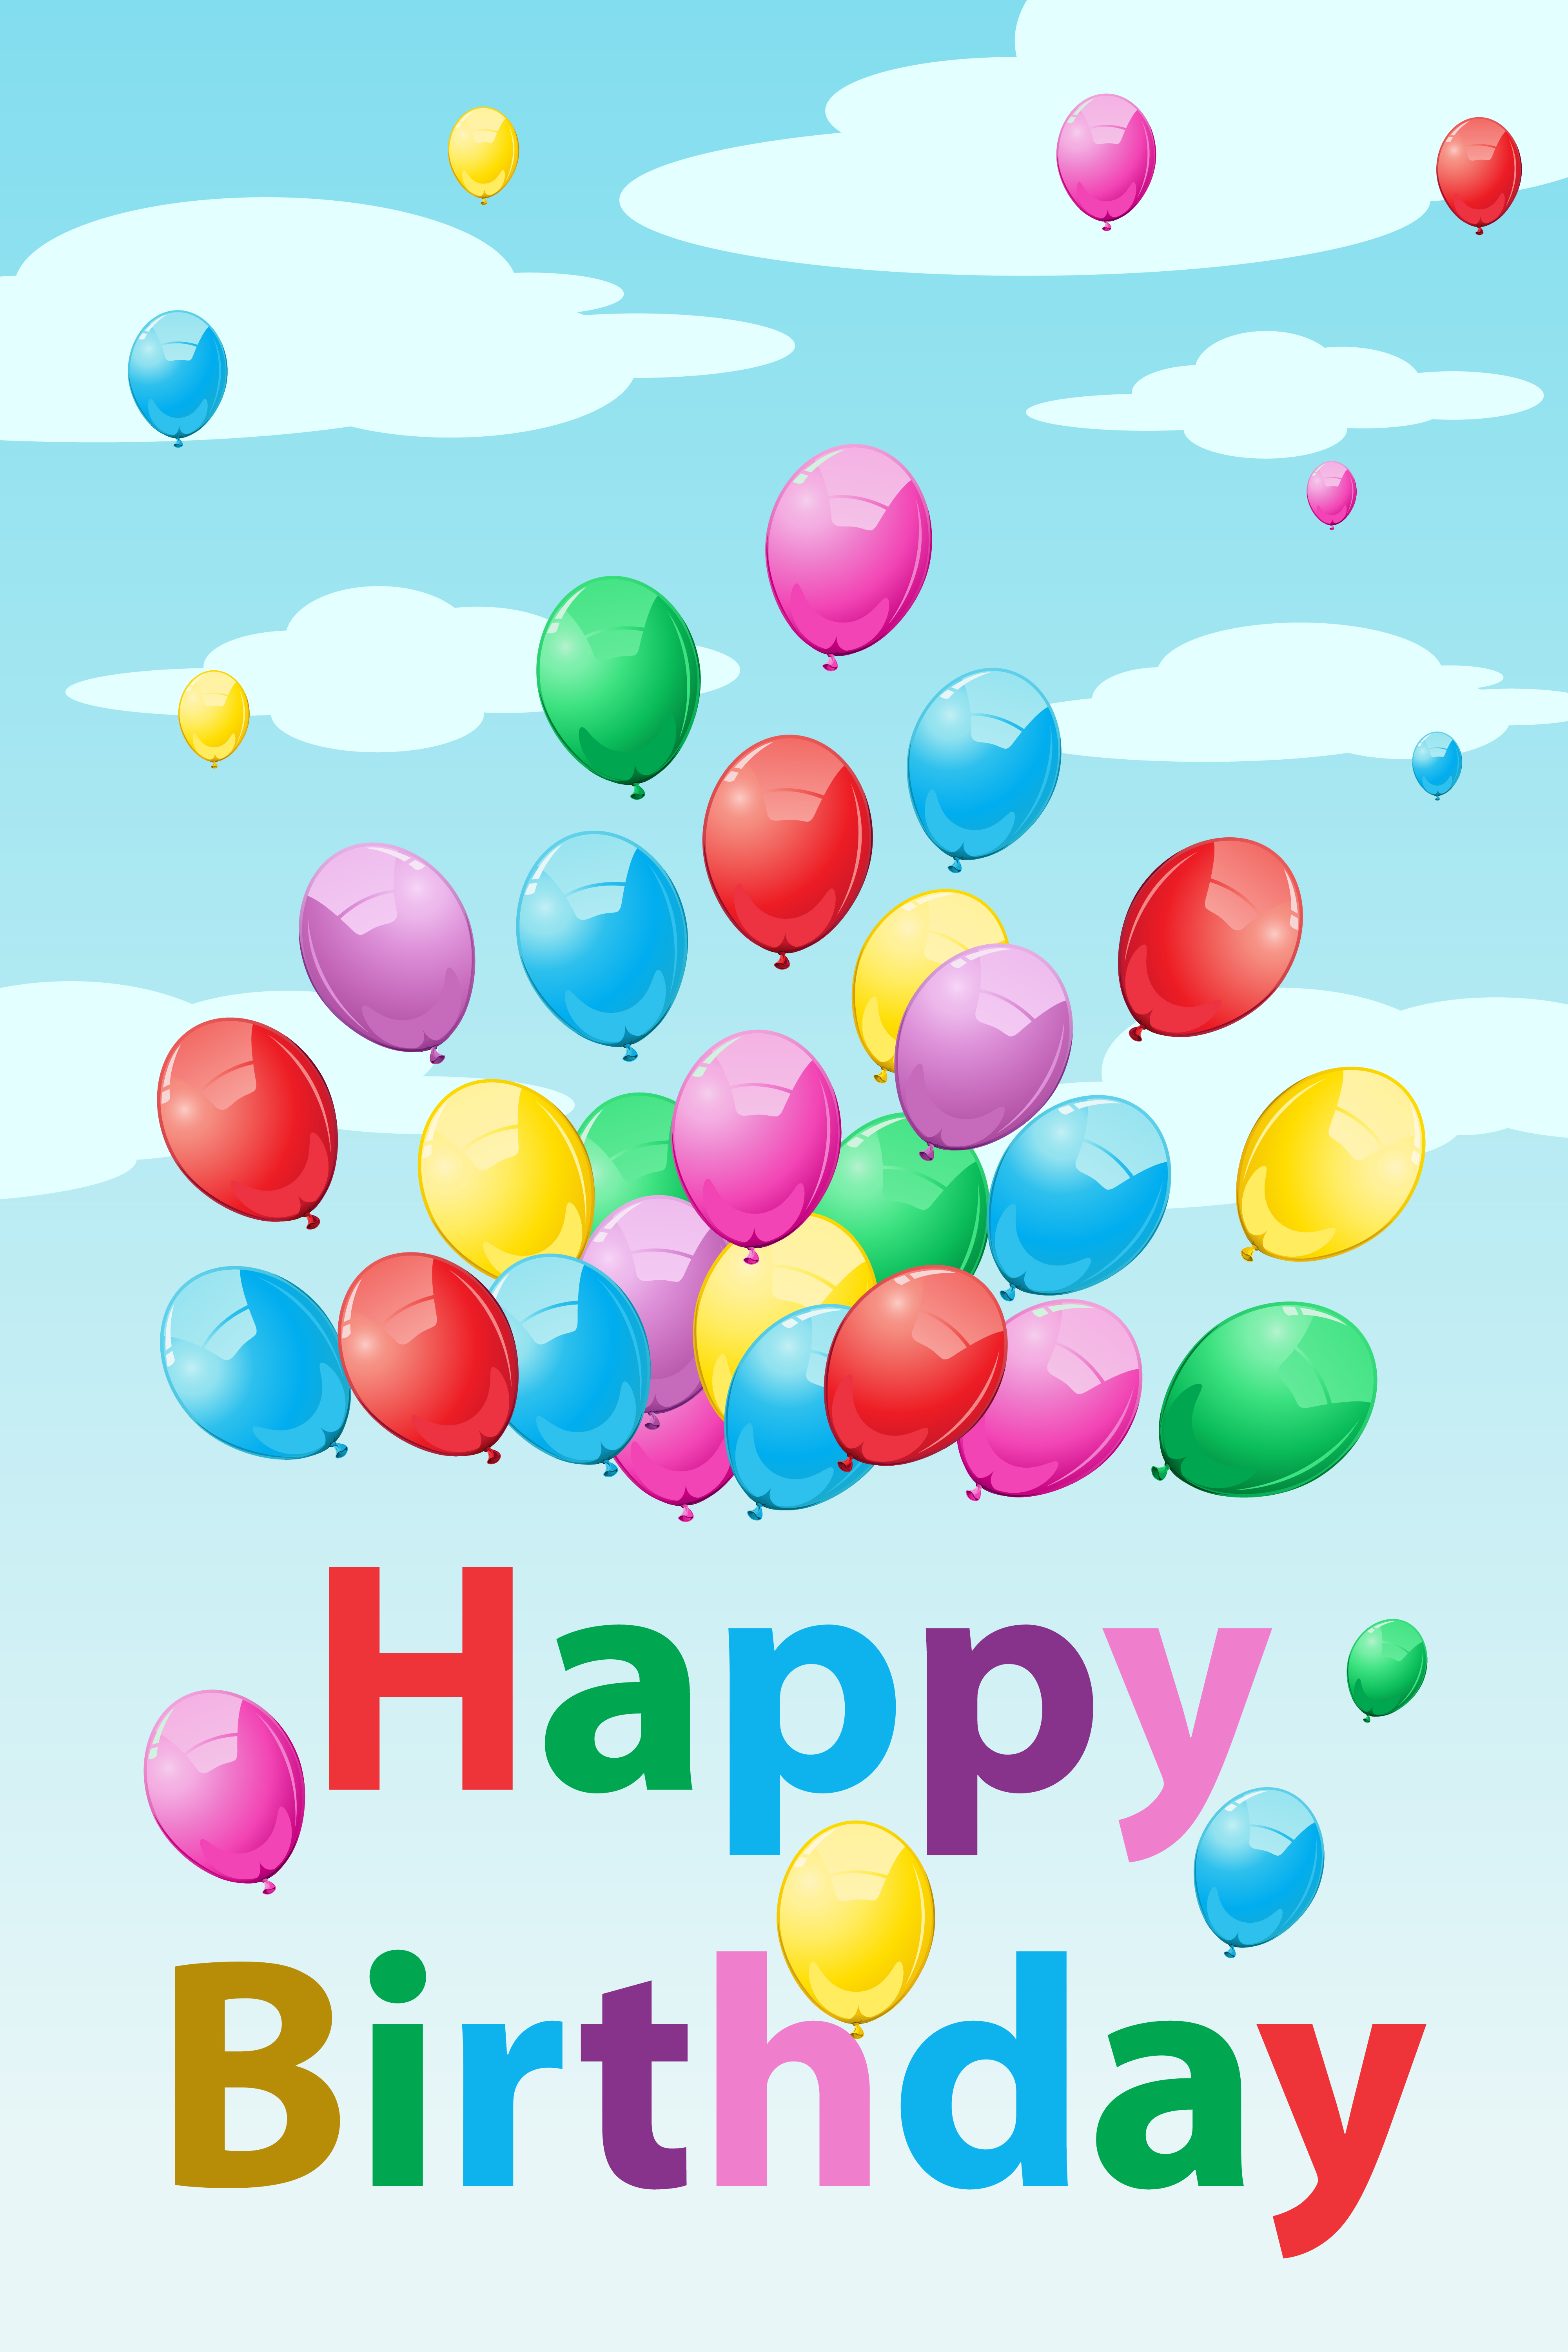 verbanning Parasiet leerling Verjaardagskaart met ballonnen 269980 Vectorkunst bij Vecteezy